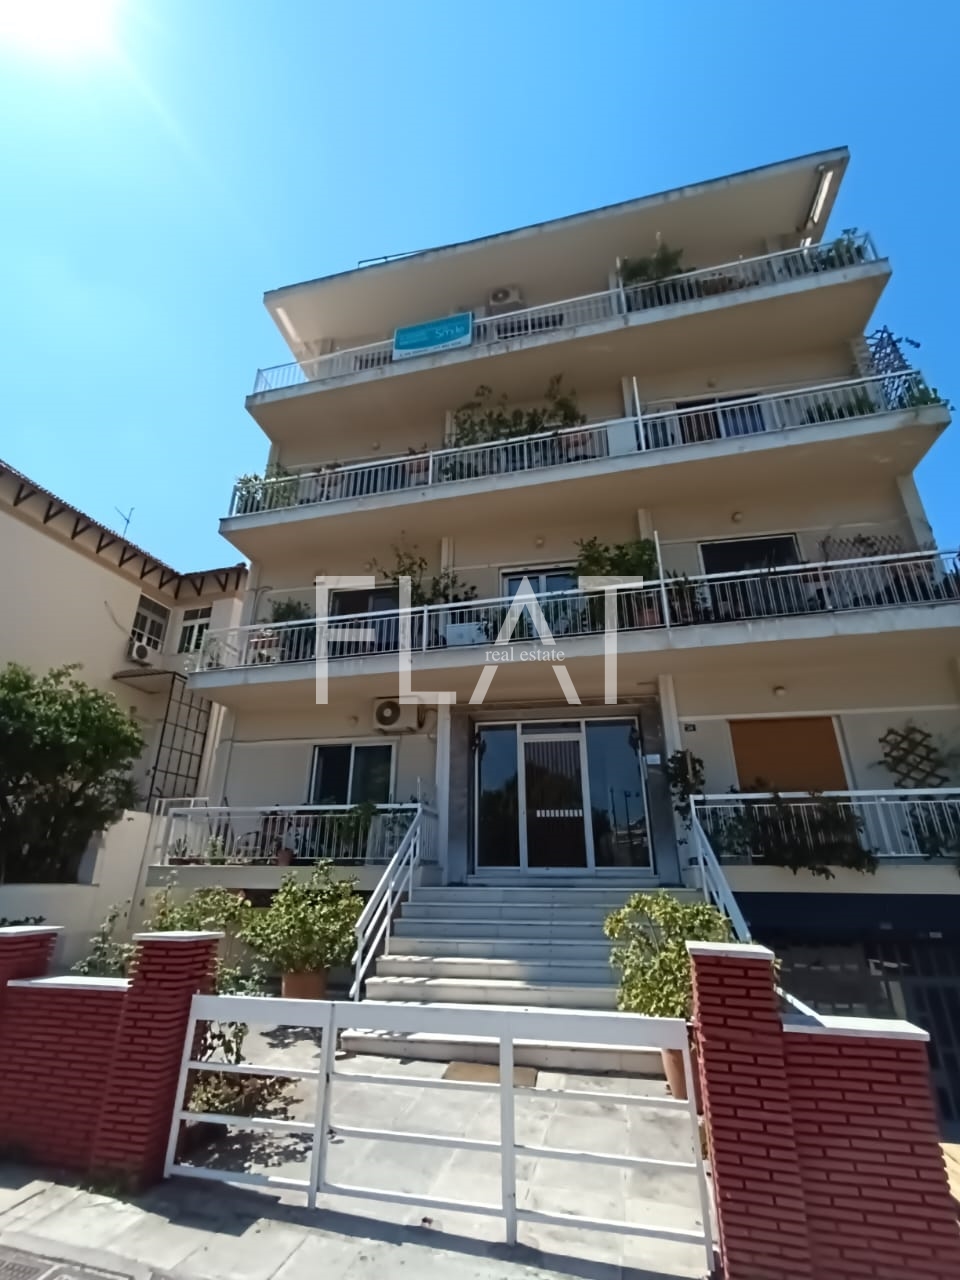 Apartment for Sale in Athens, center Ano Patisia – Mitsaki 24 |93,000 Euro